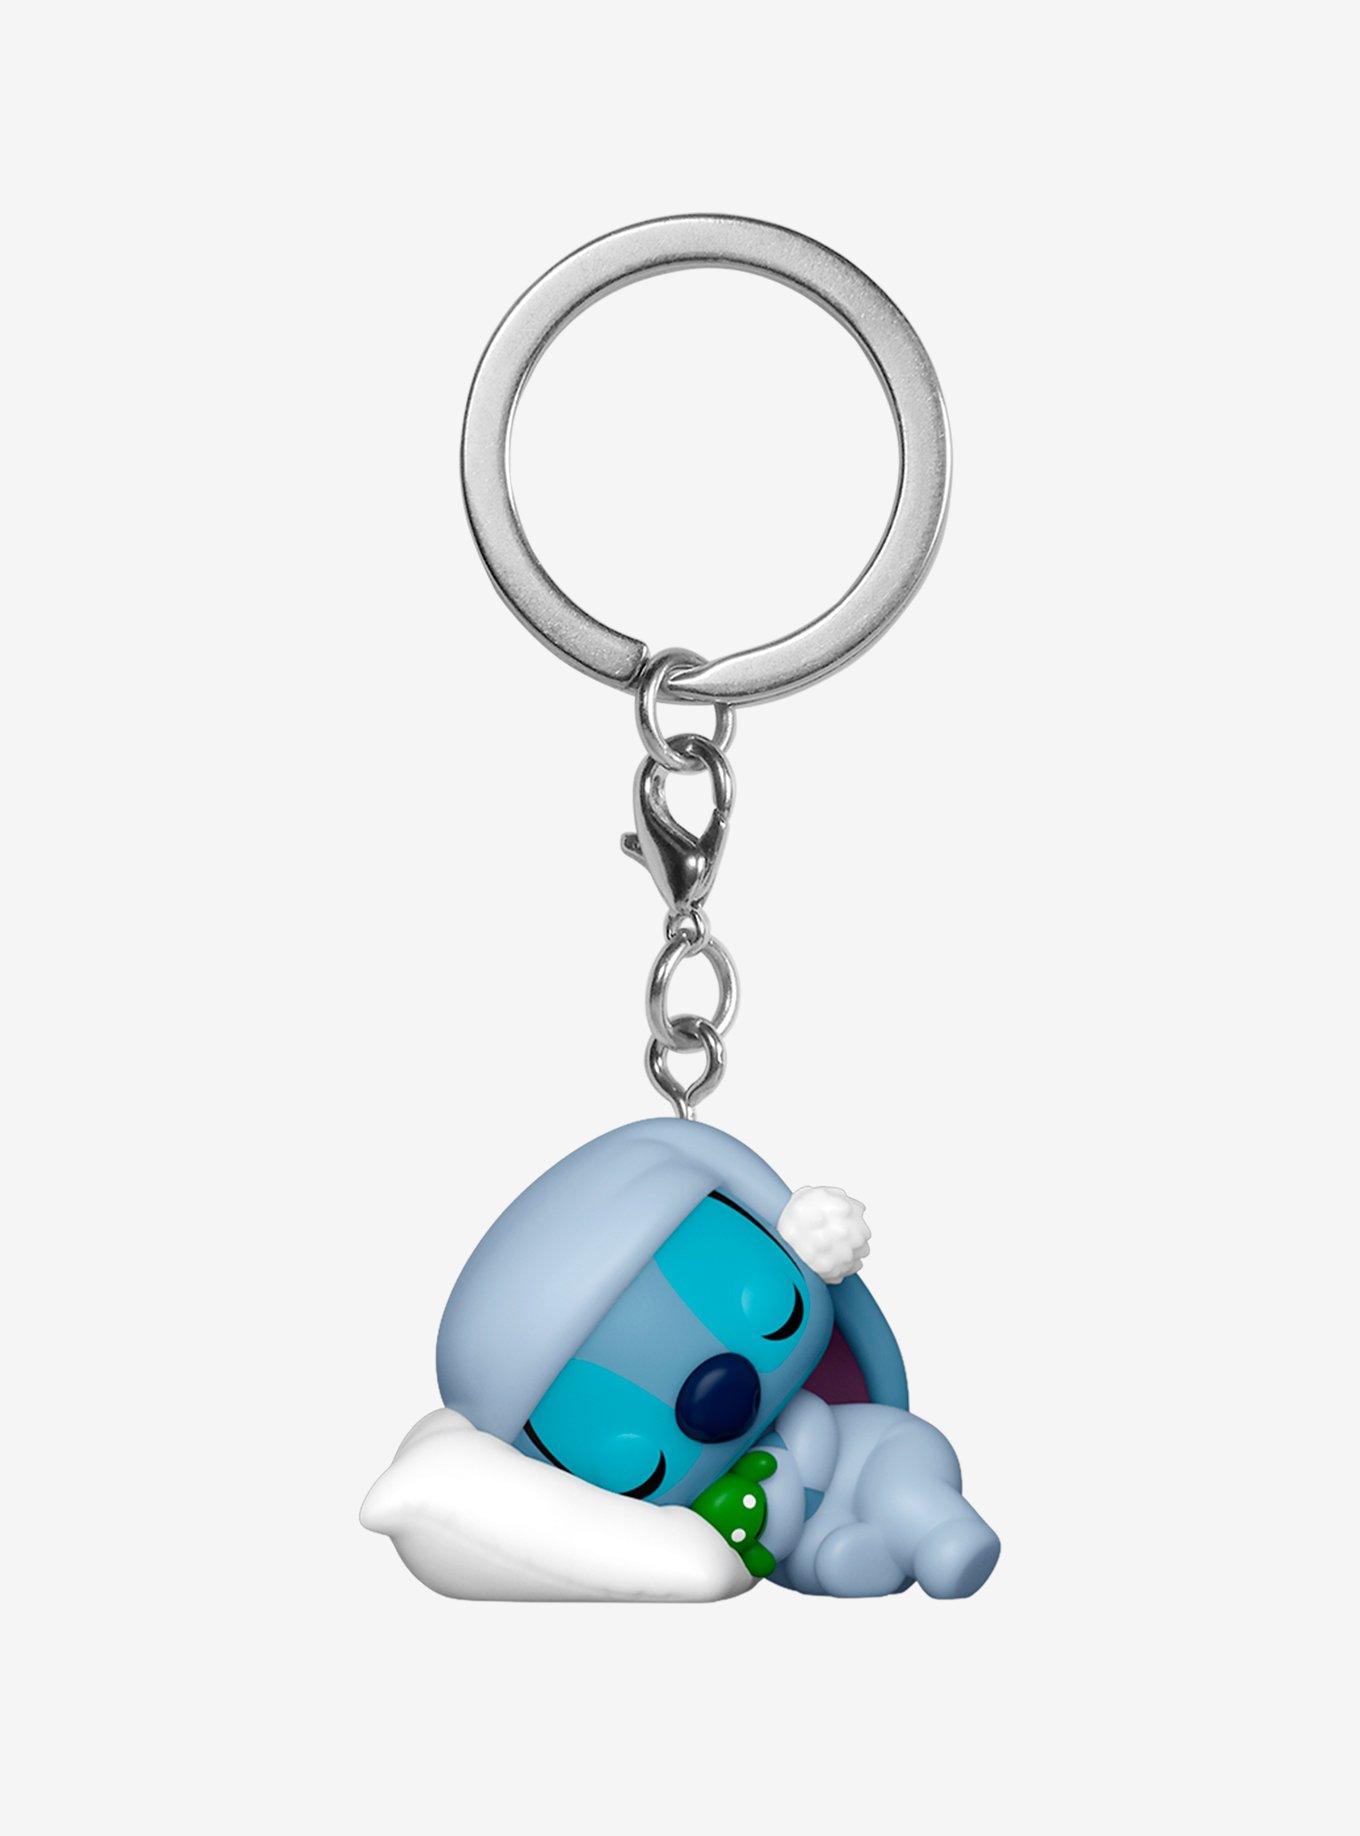 Fidget Toy Pop its Keychain Bubble Wrap Lilo & Stitch Mini Pop Keychain New